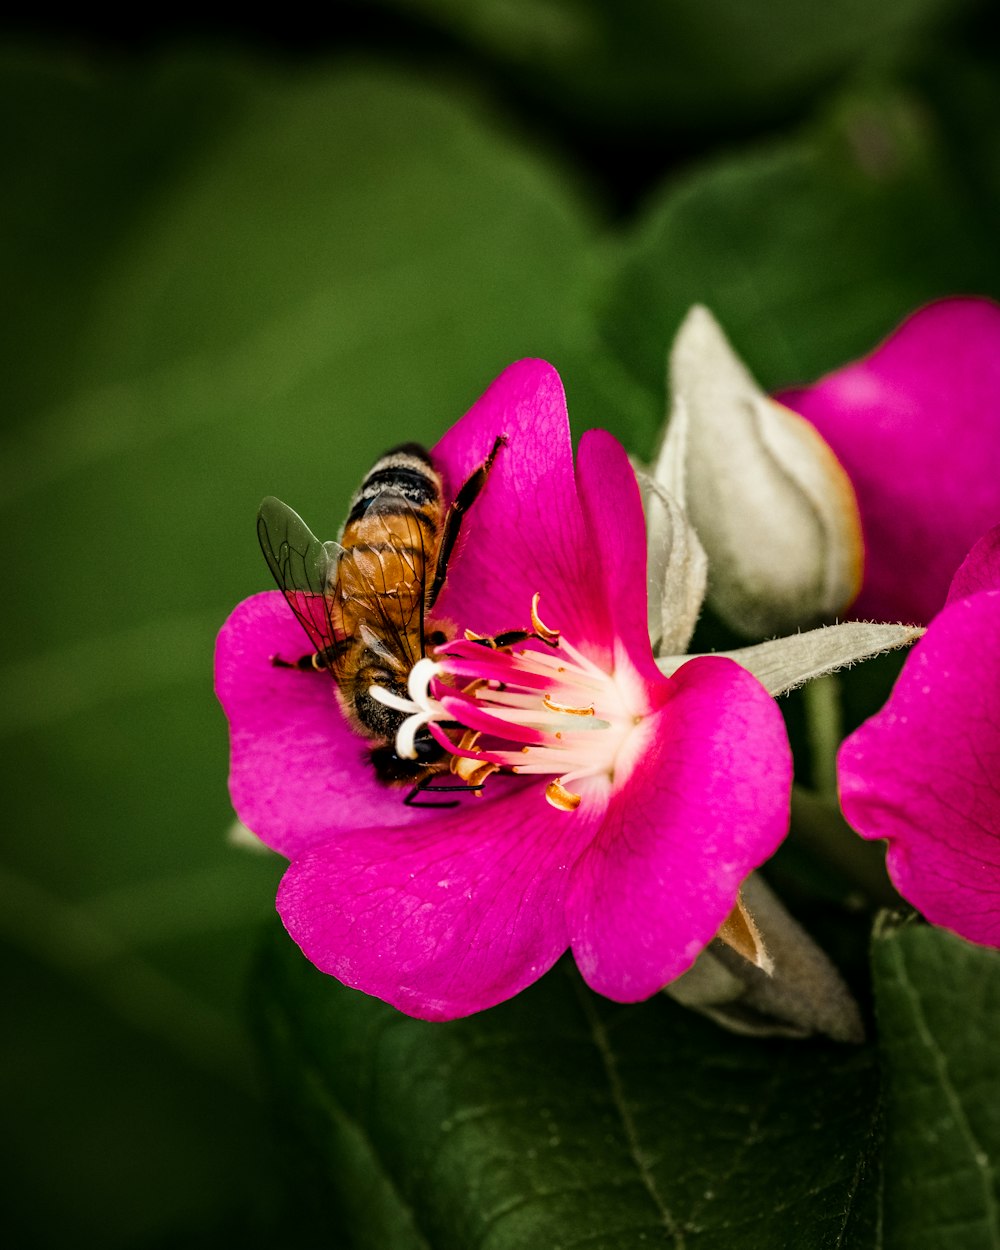 ape appollaiata sul fiore rosa nella fotografia ravvicinata durante il giorno